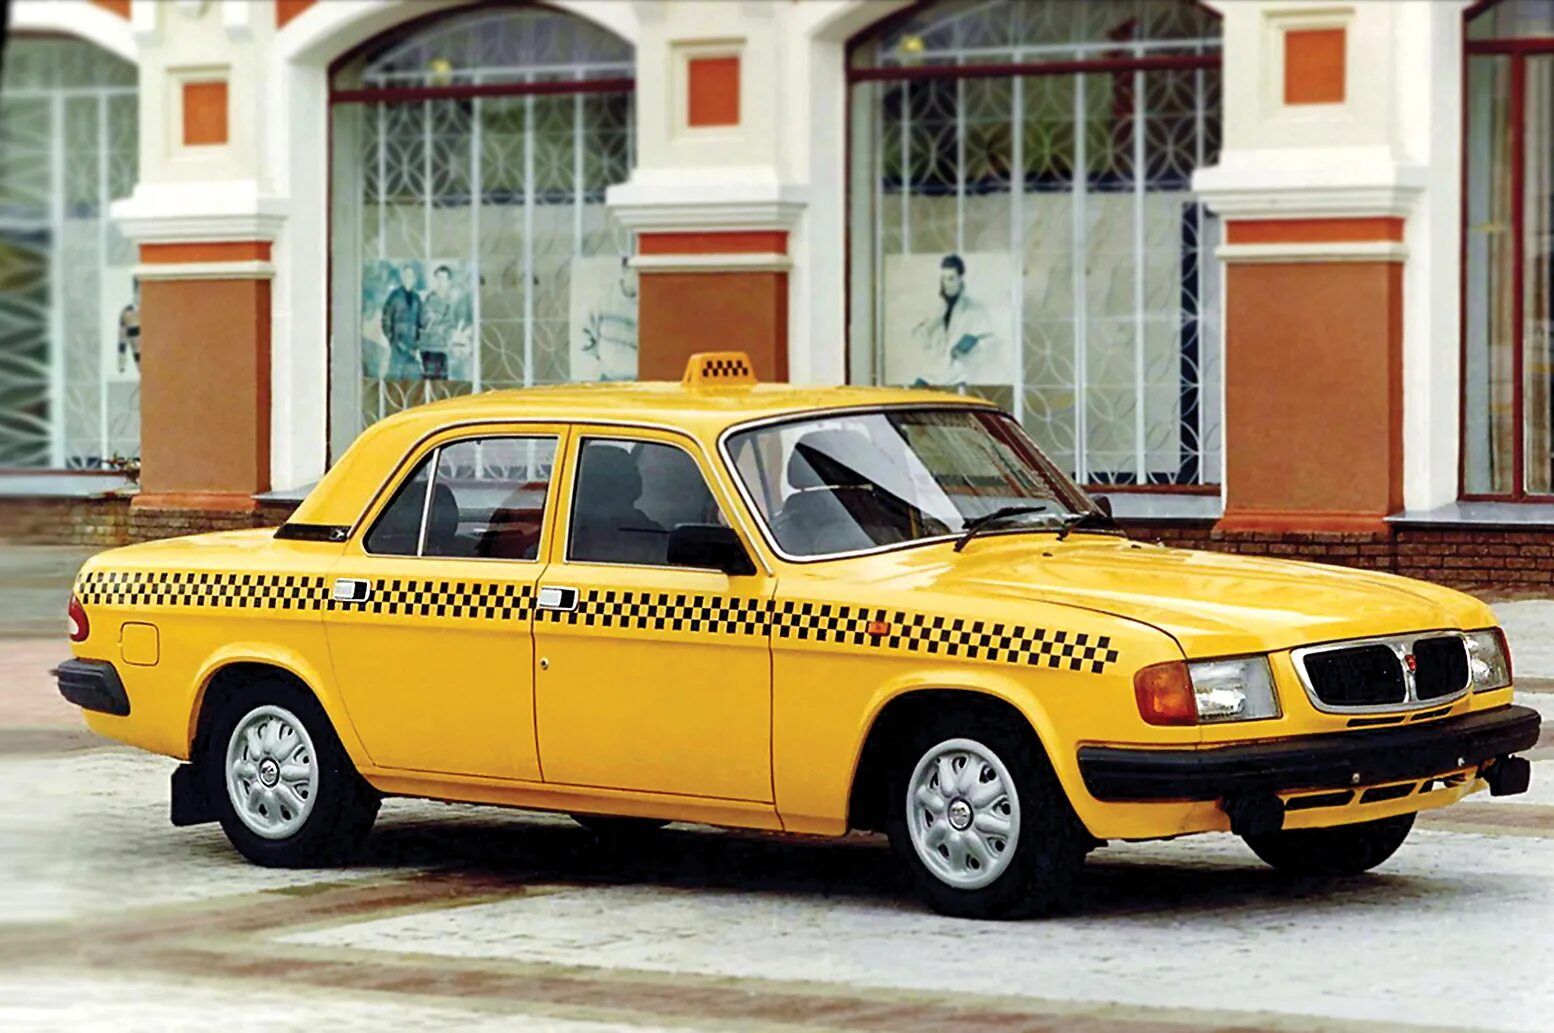 Волга ГАЗ 3110. ГАЗ 3110 Волга такси. ГАЗ 3110 желтая. ГАЗ-3110 Волга ( жёлтая).